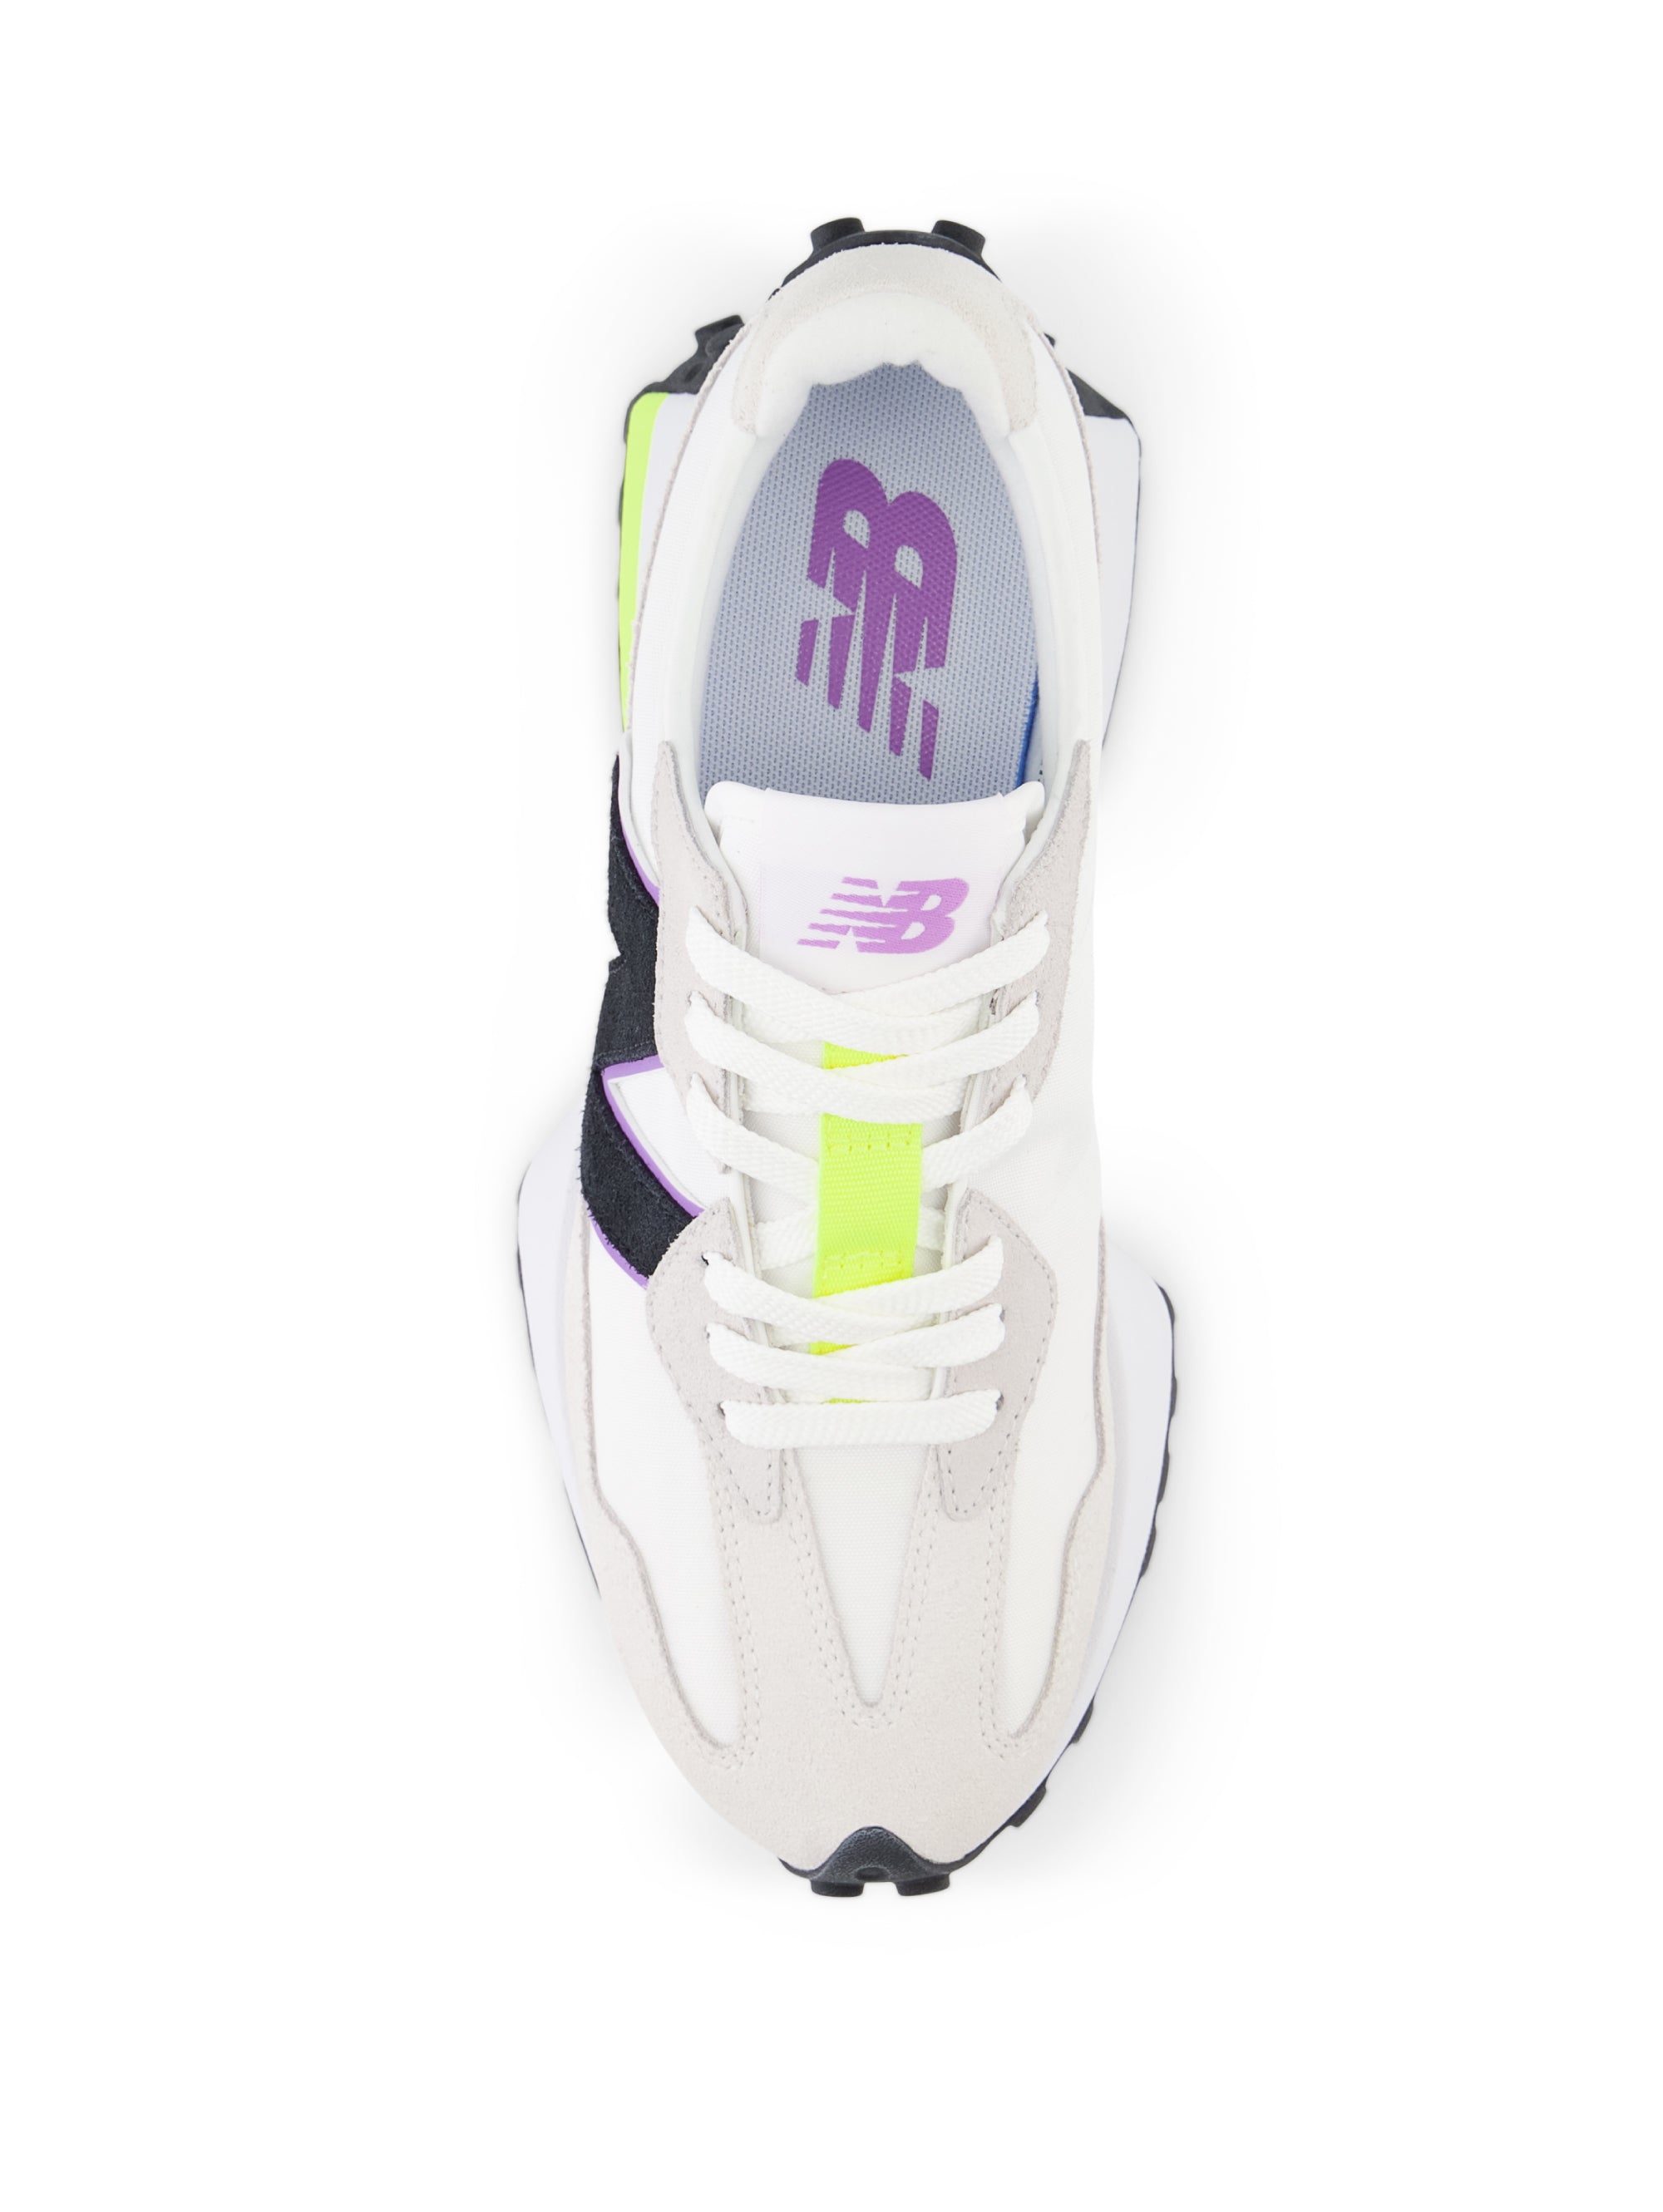 Retro Sneakers 327 White/Yellow/Pink